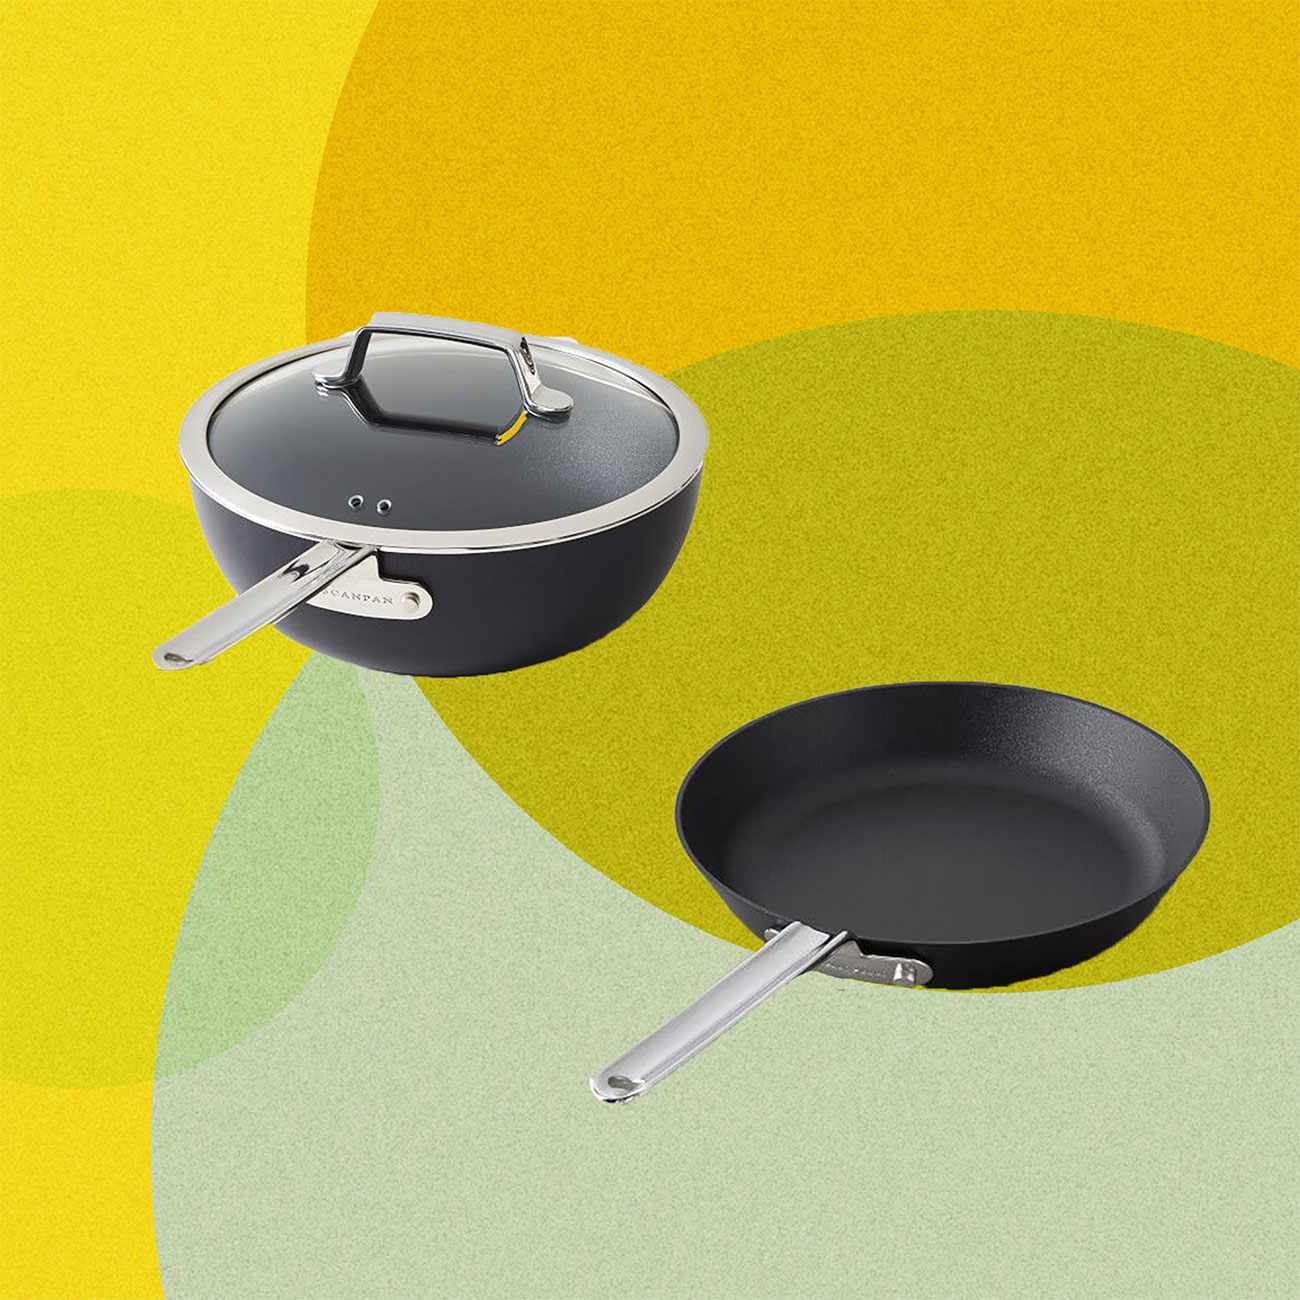 1 non-stick frying pans, 1 larger frying pan / wok